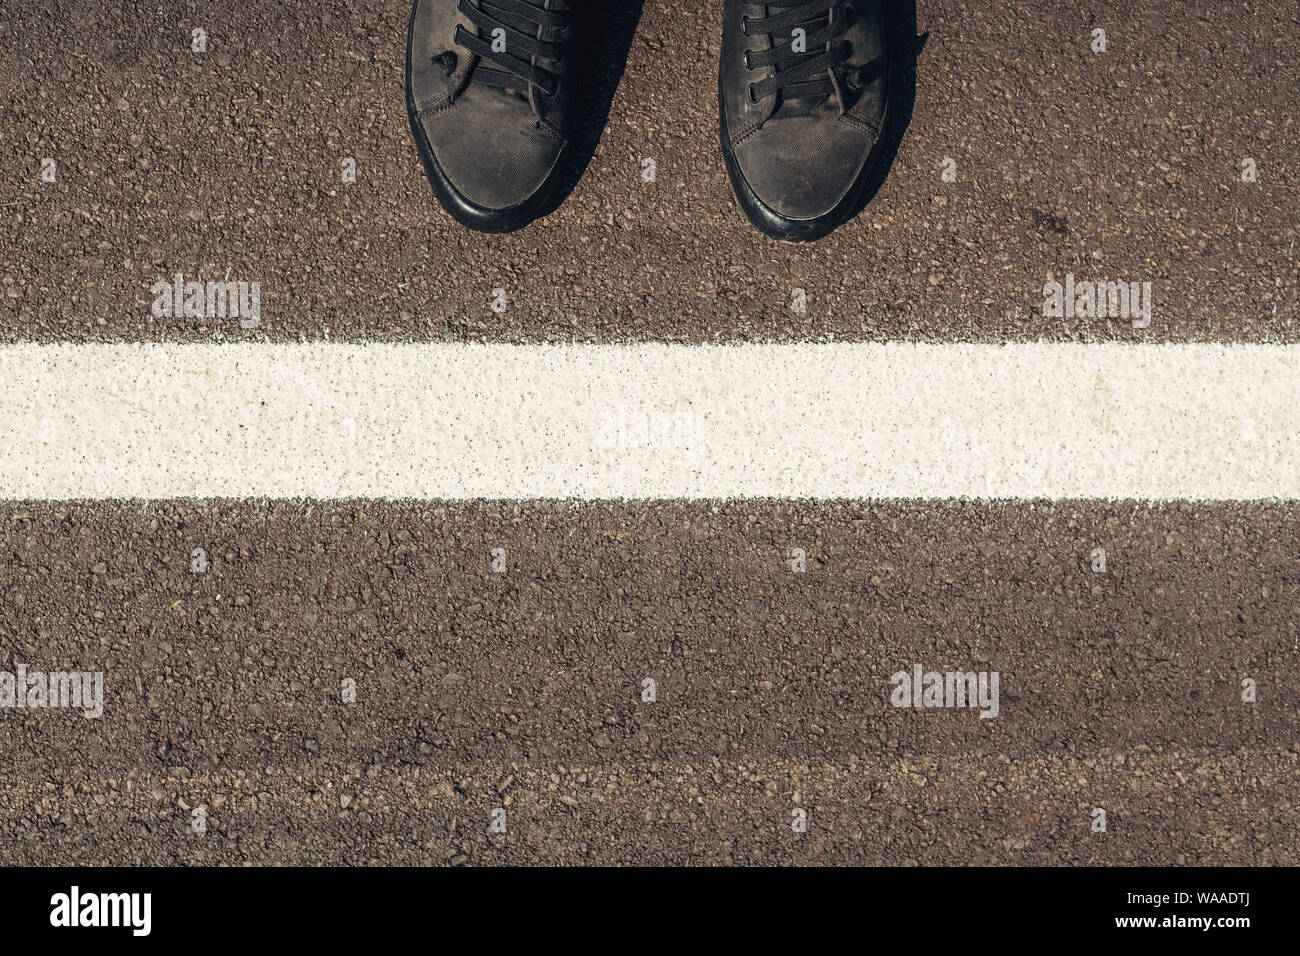 Urban Explorer, der Mensch in der modernen Schuhe stehen auf Asphalt mit weißen Abzeichen und Platz kopieren Stockfoto